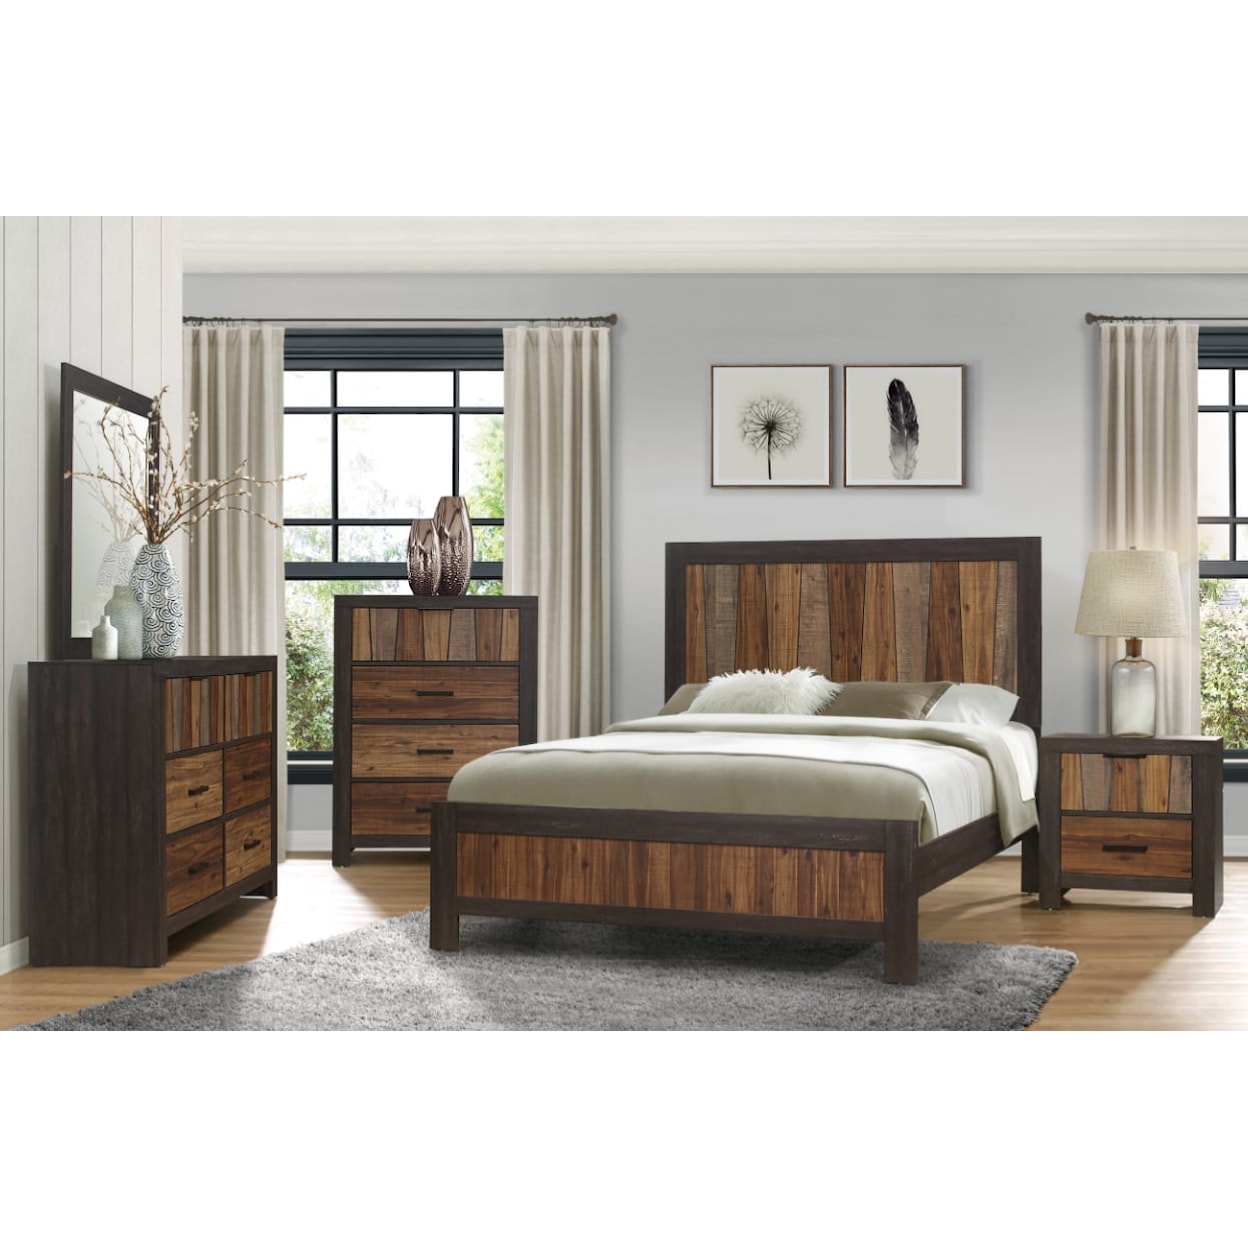 Homelegance Furniture Cooper 4-Piece Queen Bedroom Set